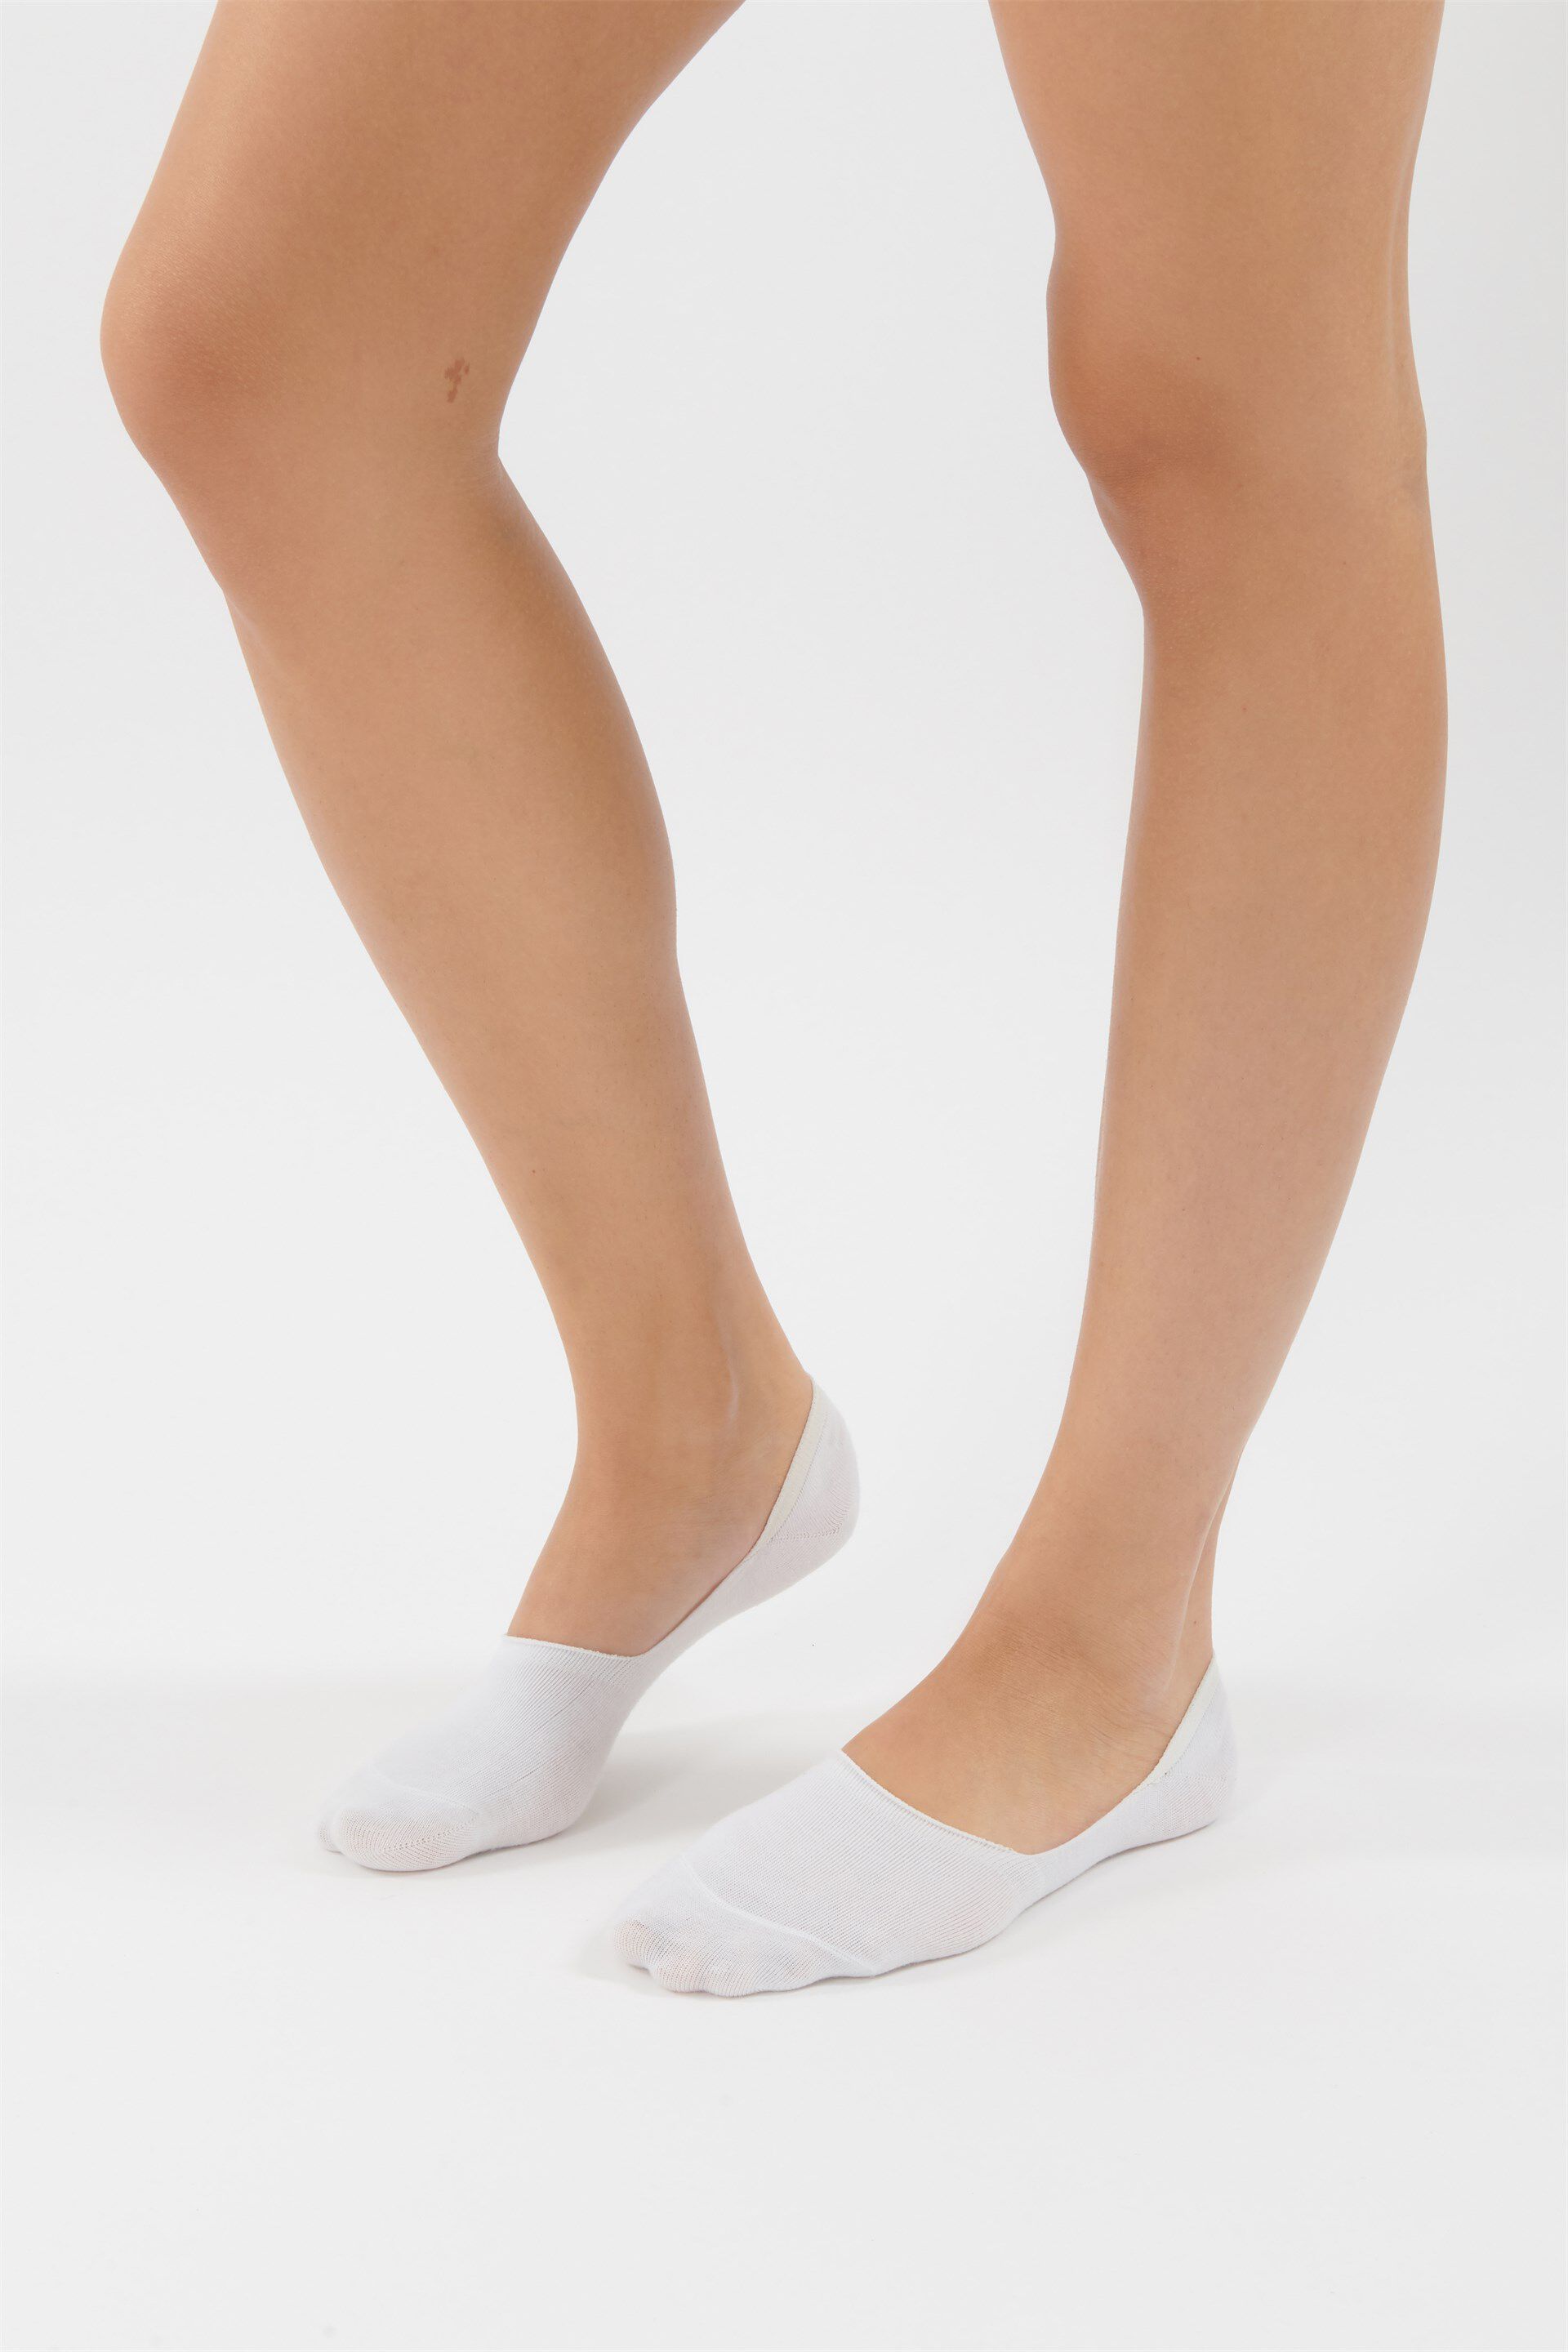 Bordure Comfort Non Comprimante Sans Élastique alber's 5 Paires SENSITIVE MINI Chaussettes Basses pour Femme Blanc Fantaisie Noir Mini-Socquettes